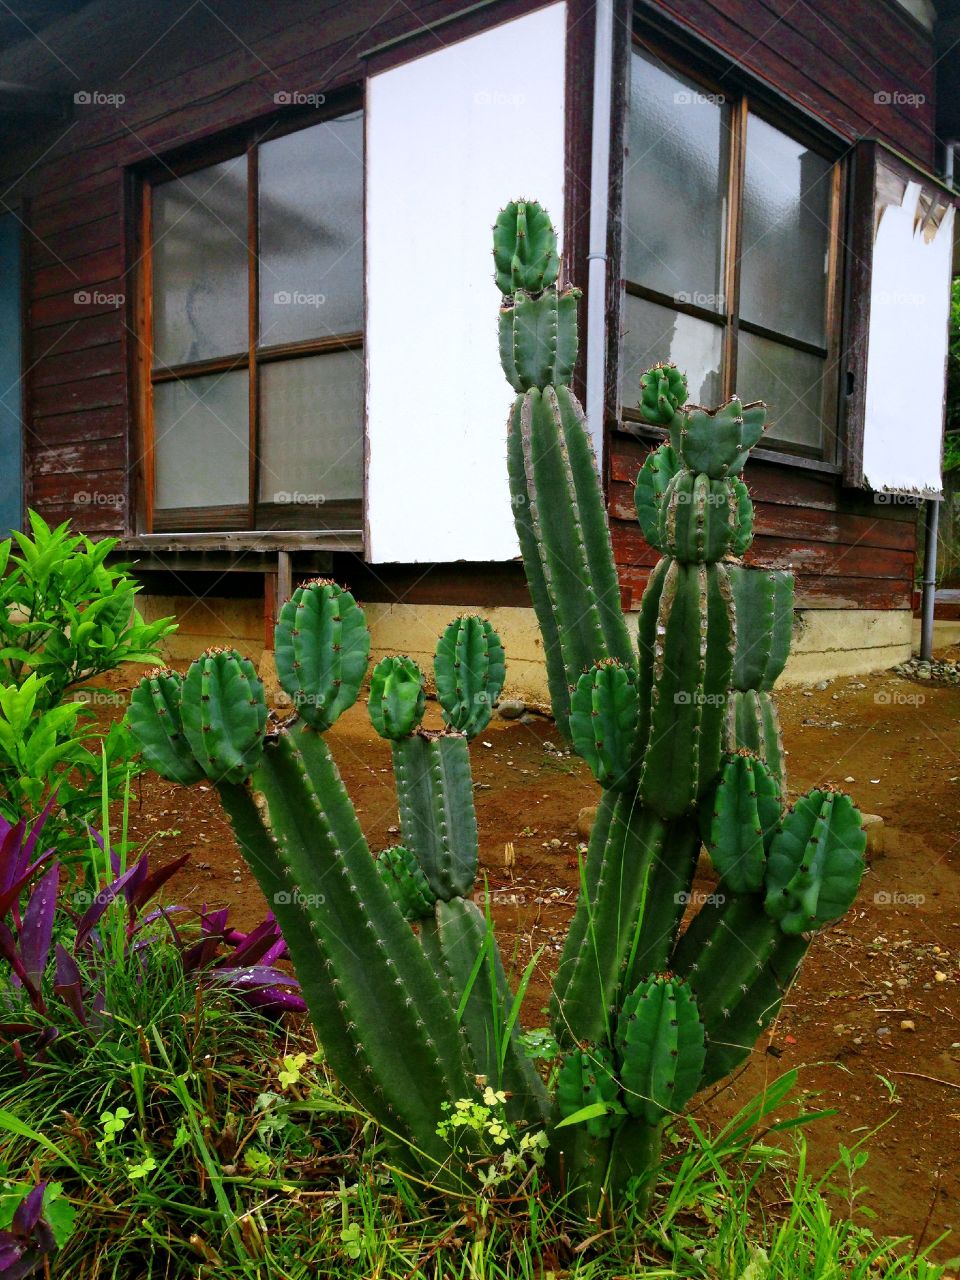 Cactus family 